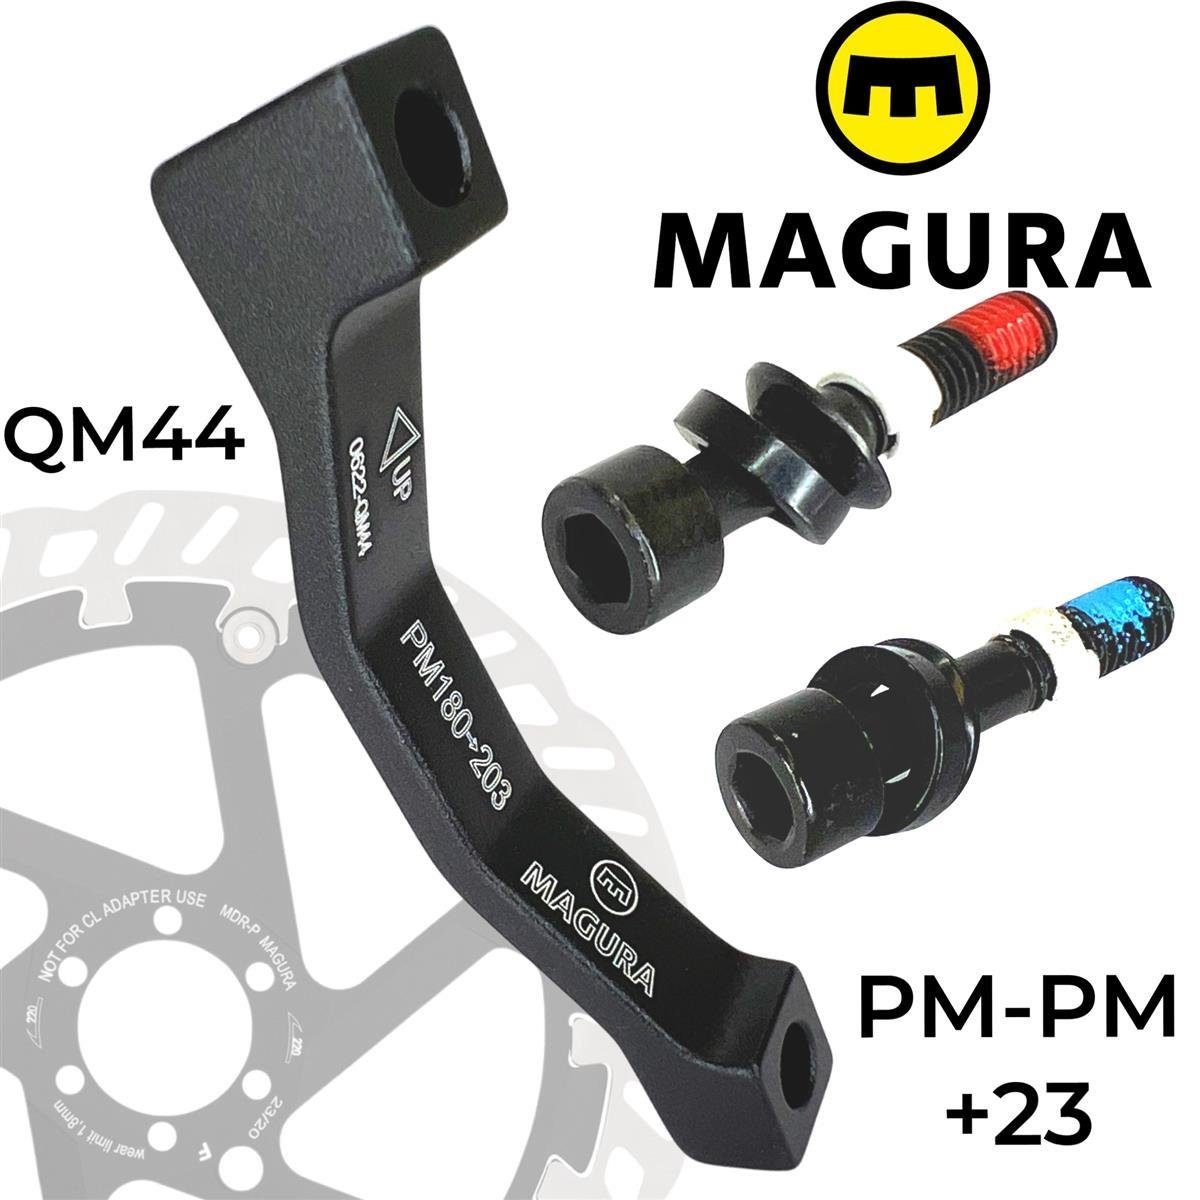 Magura Scheibenbremse Magura Bremsscheiben Adapter QM 44, PM 180-203 +23mm